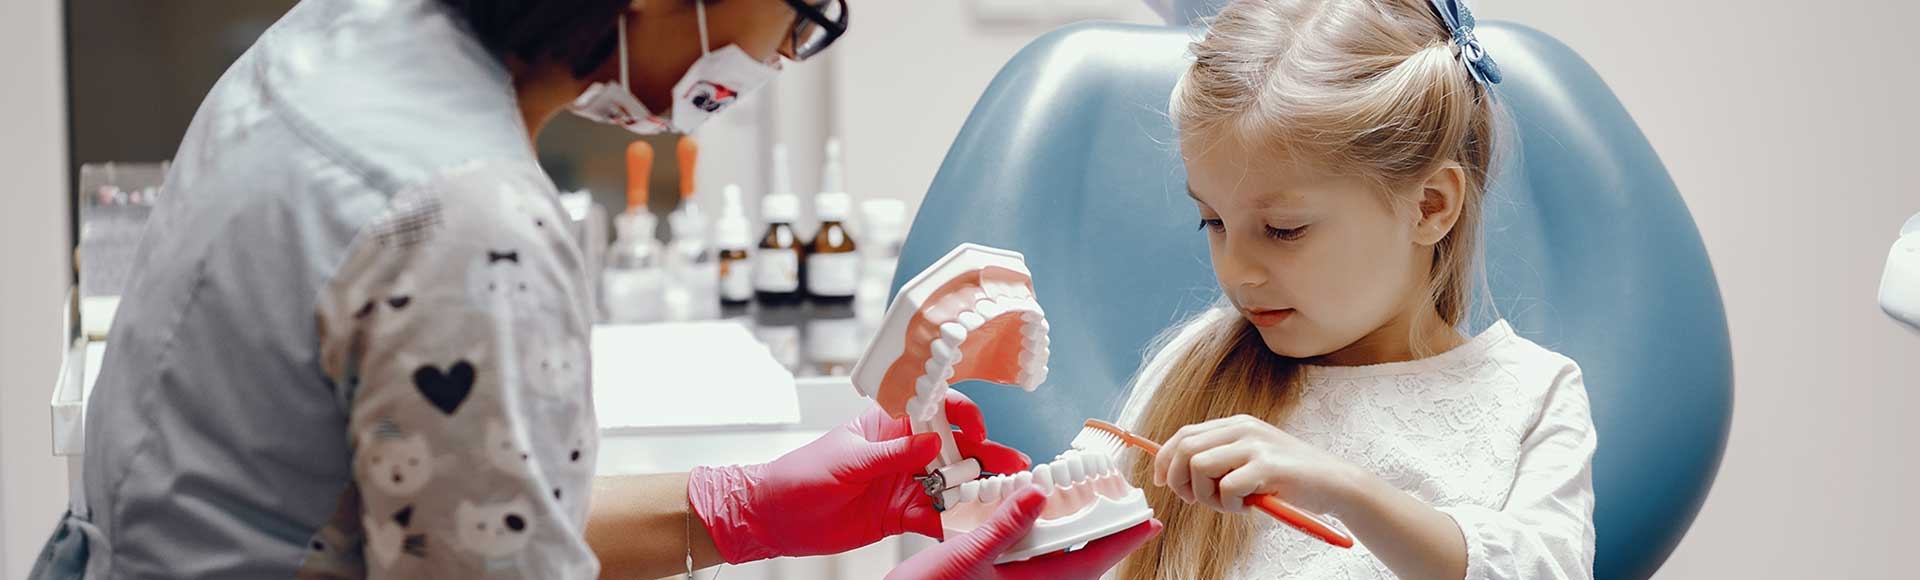 dentist teaching little girl to brush teeth